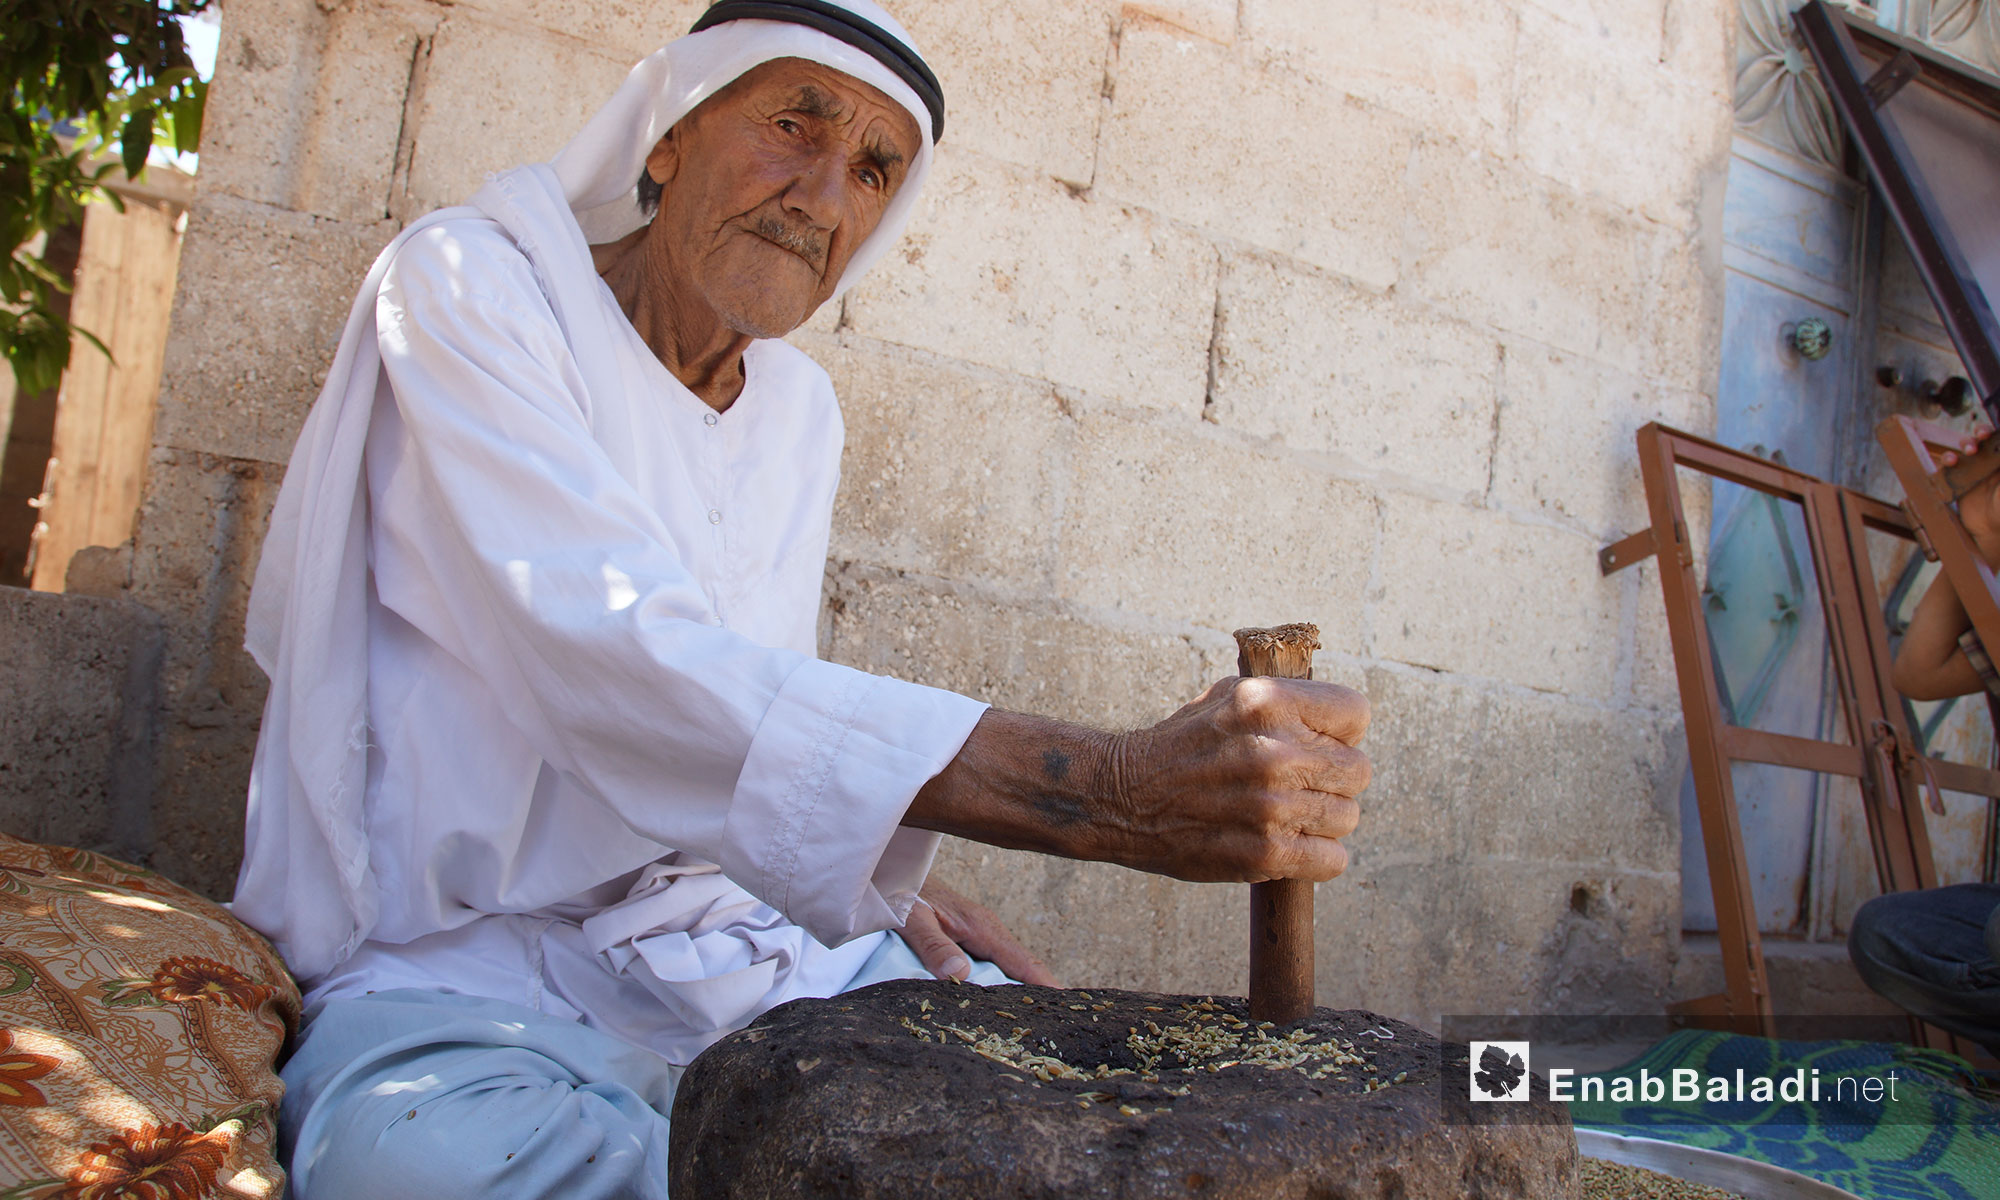 الحاج عبد الغني سليمان يستخدم حجر الرحى في طحن الحبوب في ريف إدلب - 23 حزيران 2018 (عنب بلدي)